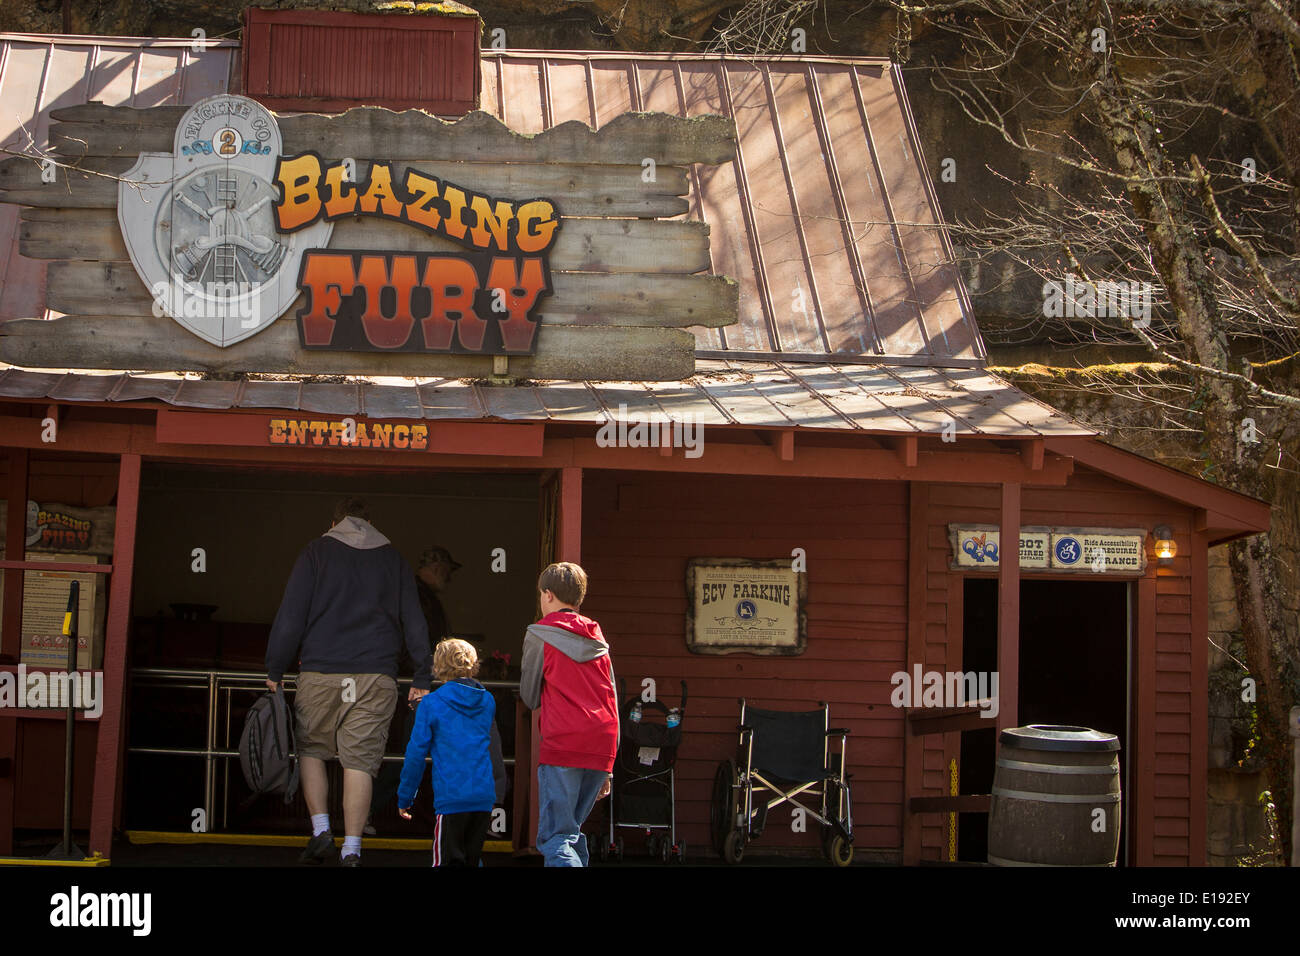 Blazing Fury coaster est représentée dans le parc à thème Dollywood Pigeon Forge, Tennessee Banque D'Images